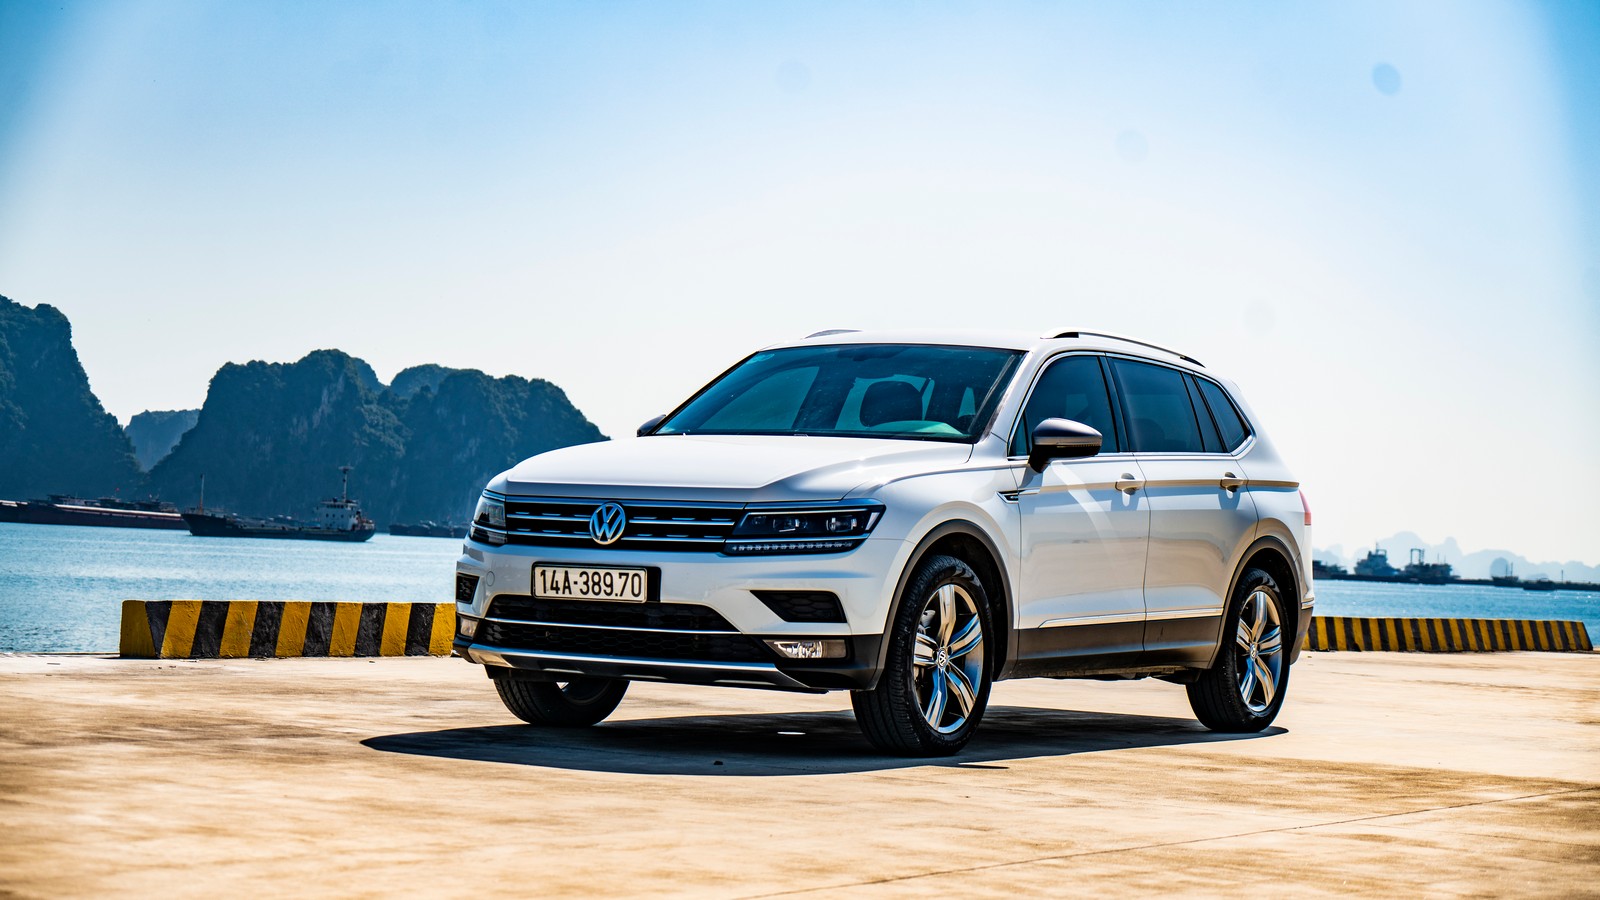 Volkswagen Việt Nam tung ưu đãi trọn vẹn cuối năm